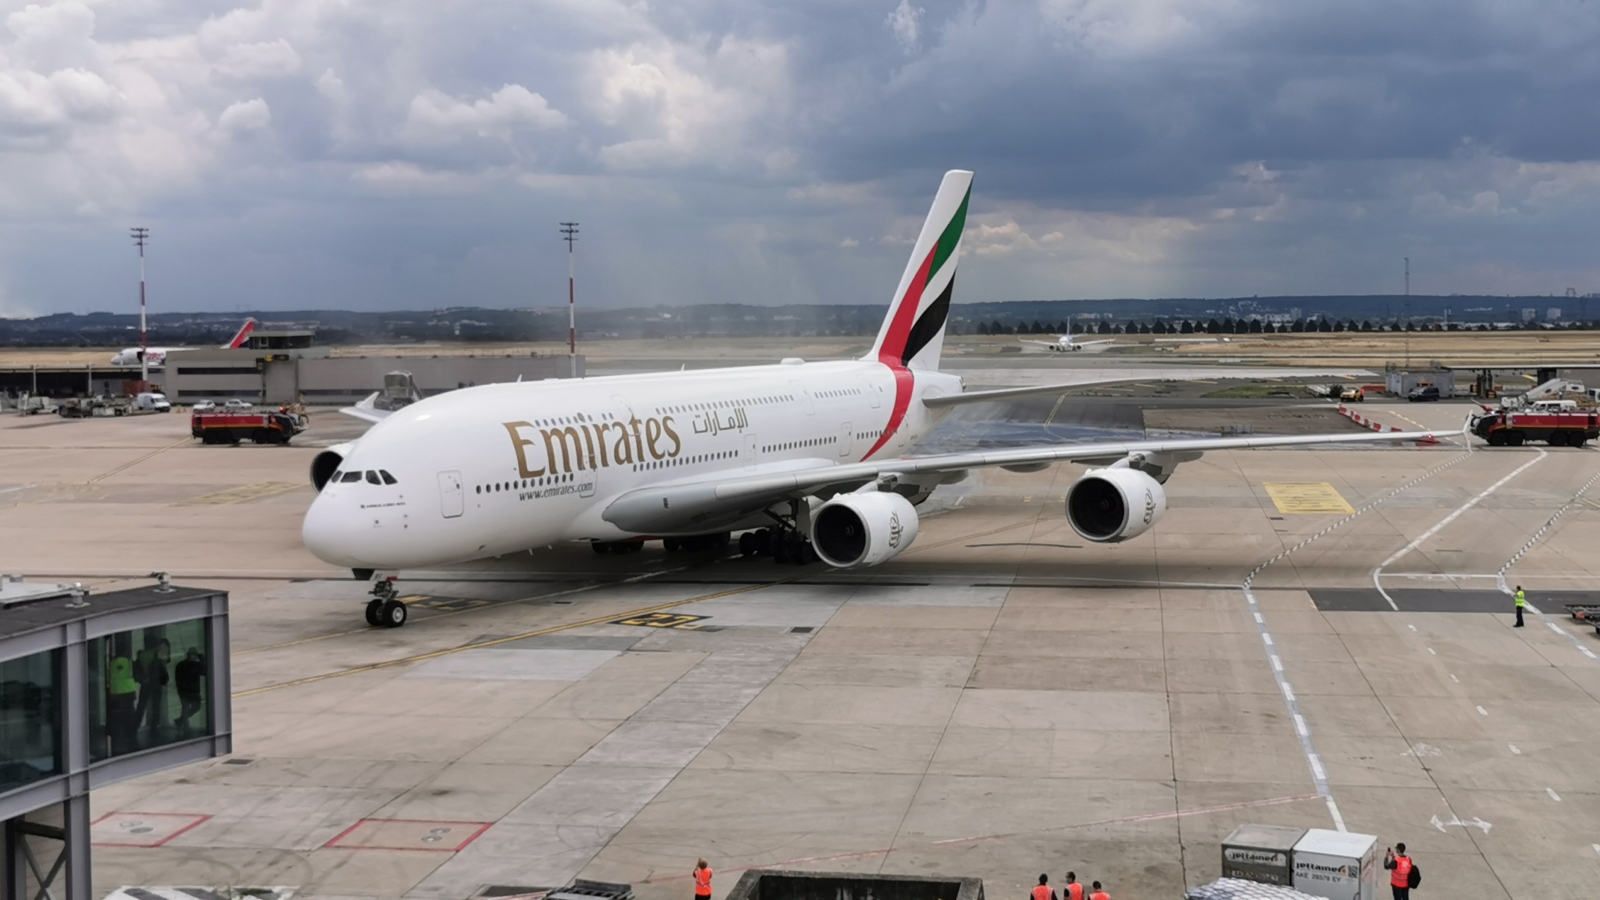 Emirates a enregistré ses premières pertes financières depuis plus de 30 ans